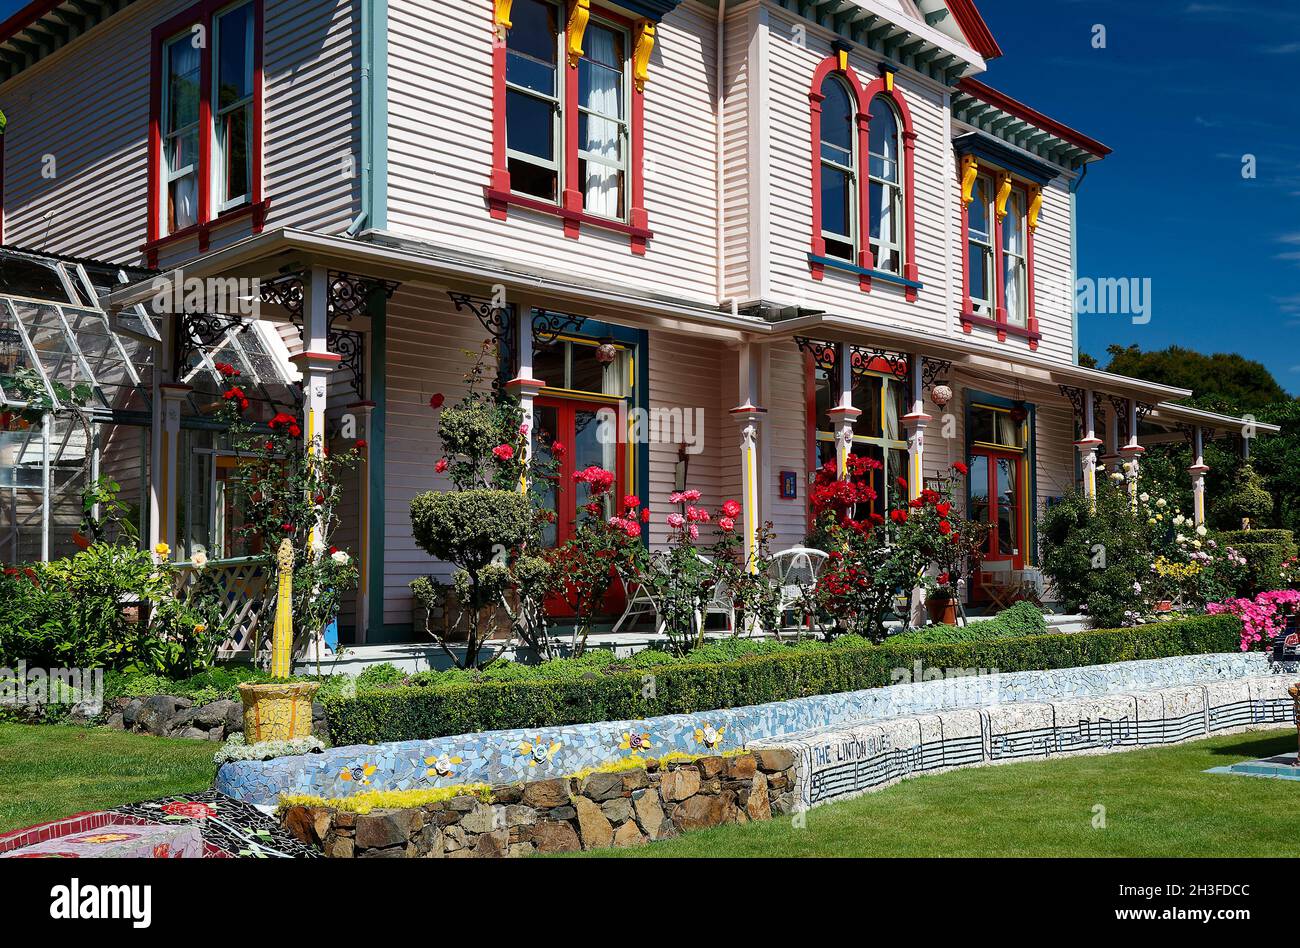 La maison des Giants; finitions multicolores, serre, jardin; banc de mosaïque;Fleurs, colorées; décoratives, île du Sud, Akaroa; Nouvelle-Zélande Banque D'Images